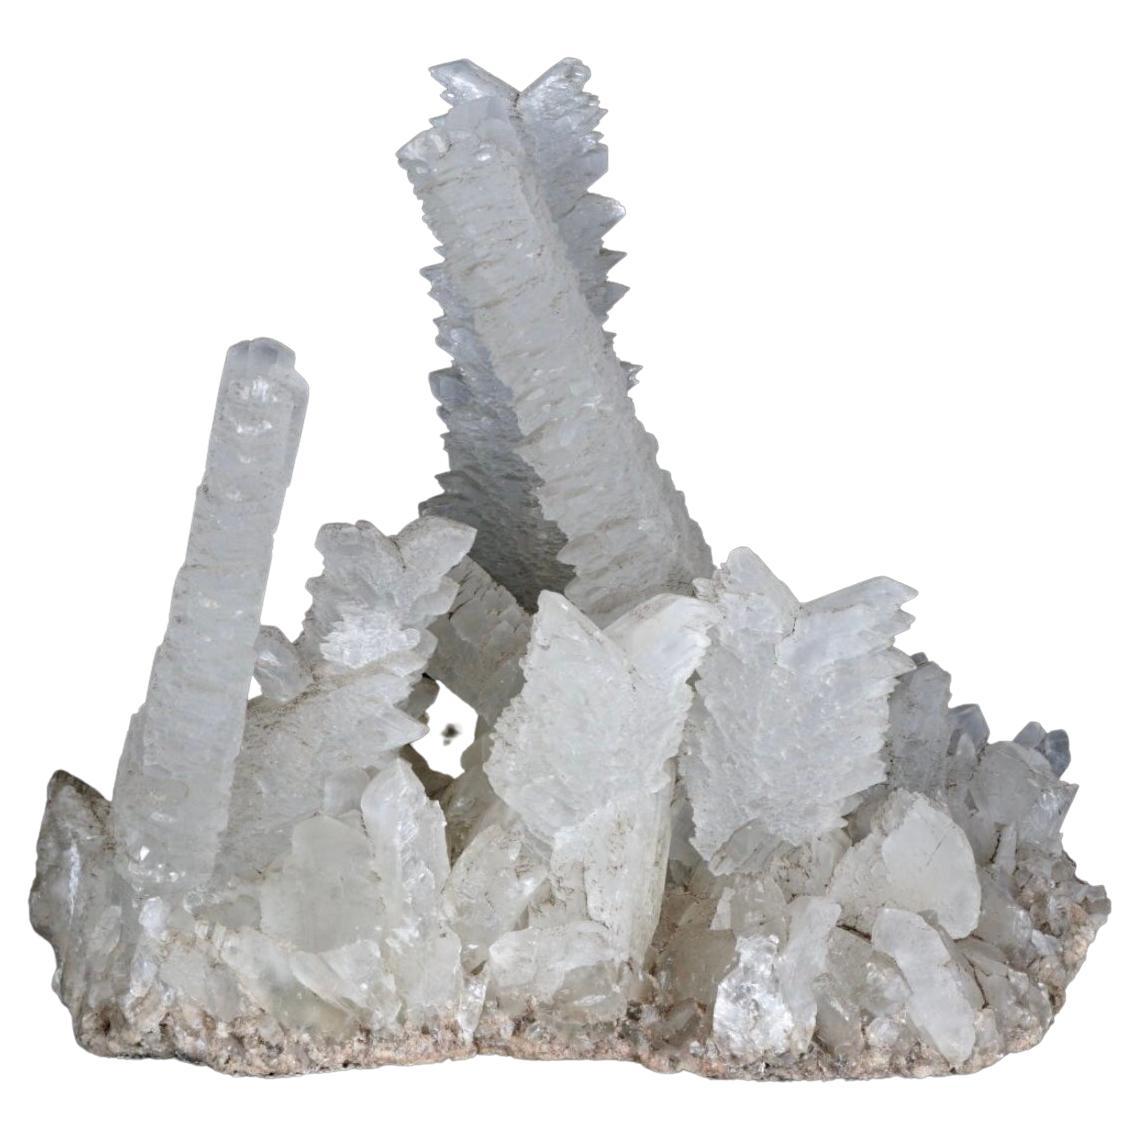 Grand spécimen de formation de cristaux de sélénite en queue de poisson